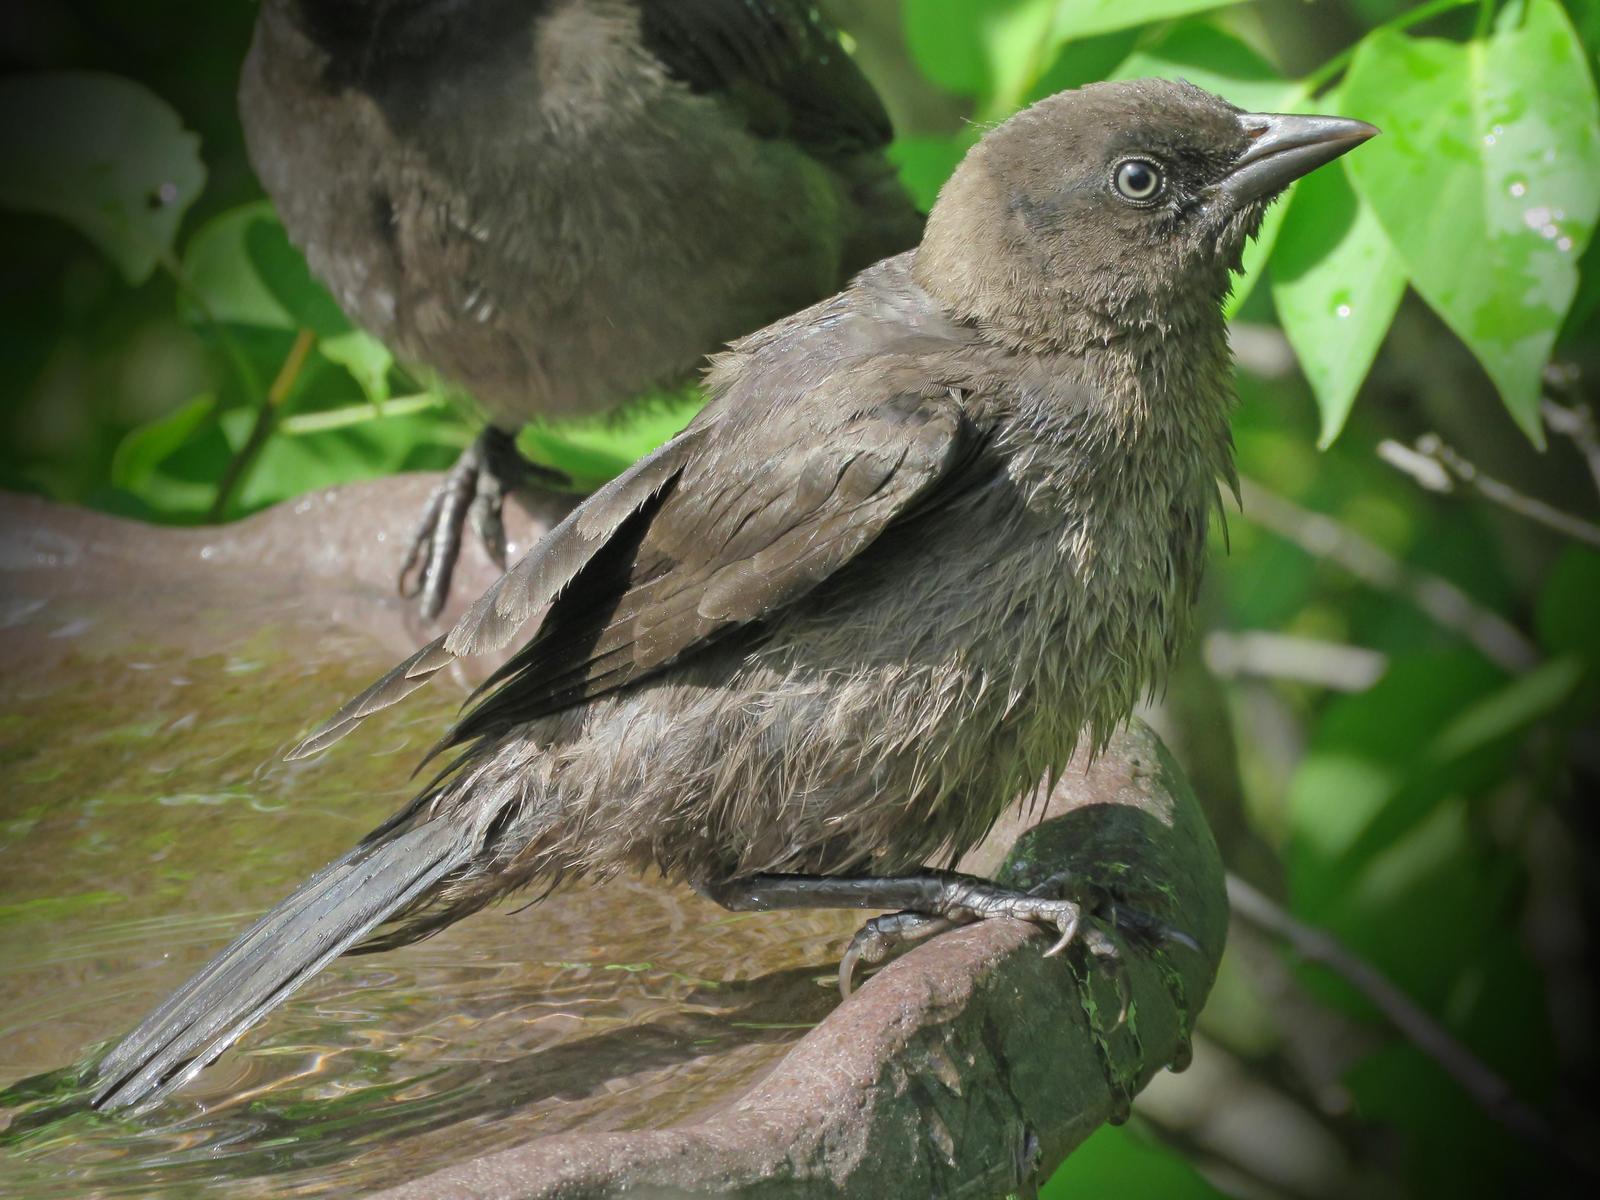 blackbird sp. Photo by Bob Neugebauer